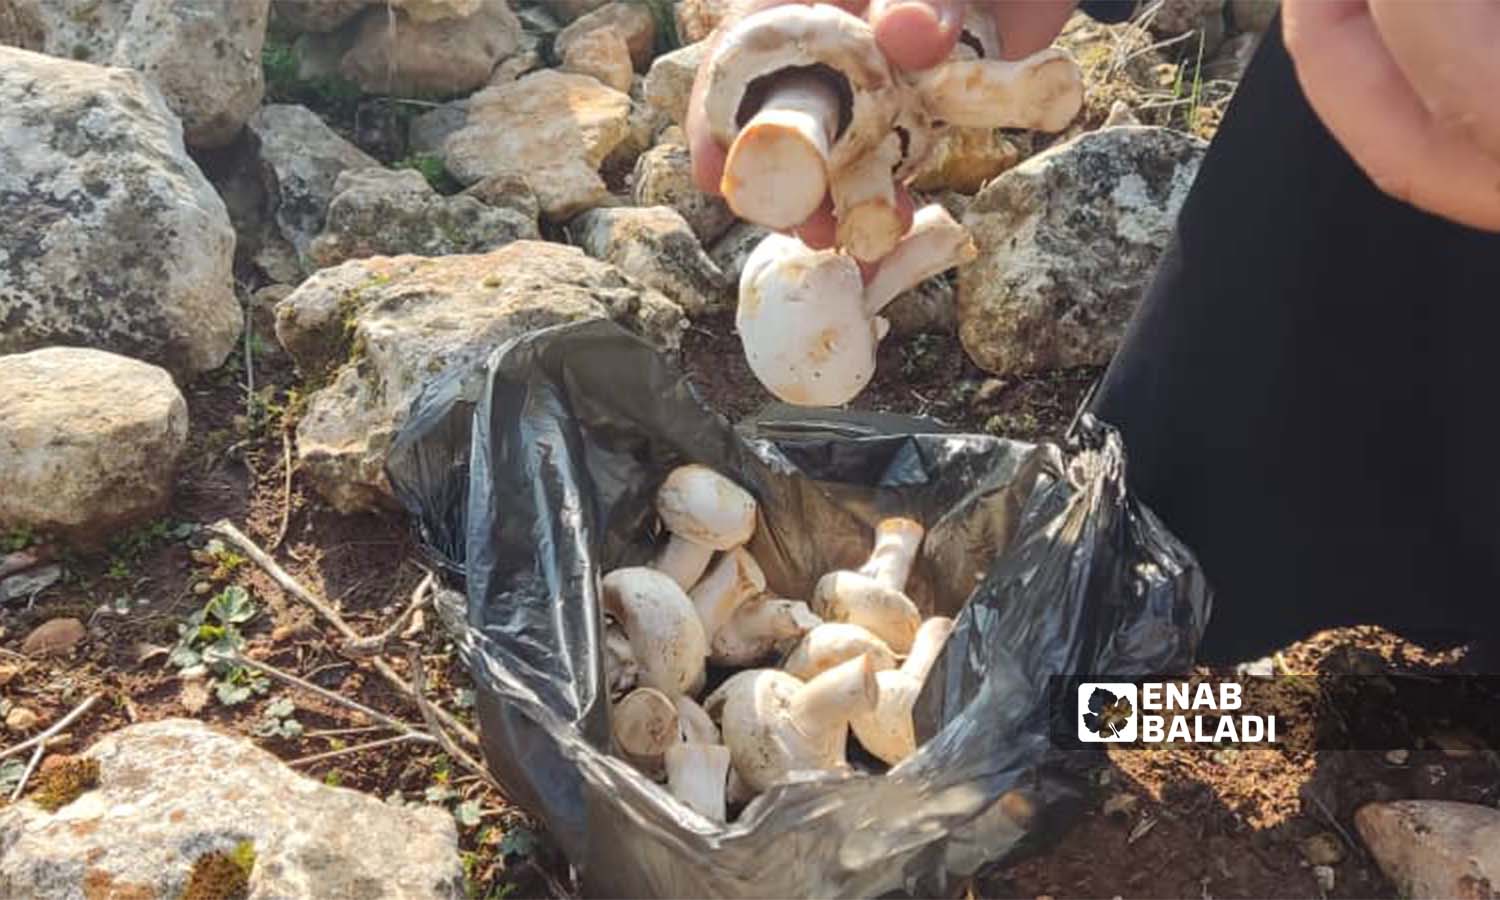 Collecting mushrooms in Idlib region (Enab Baladi / Hadia Mansour)